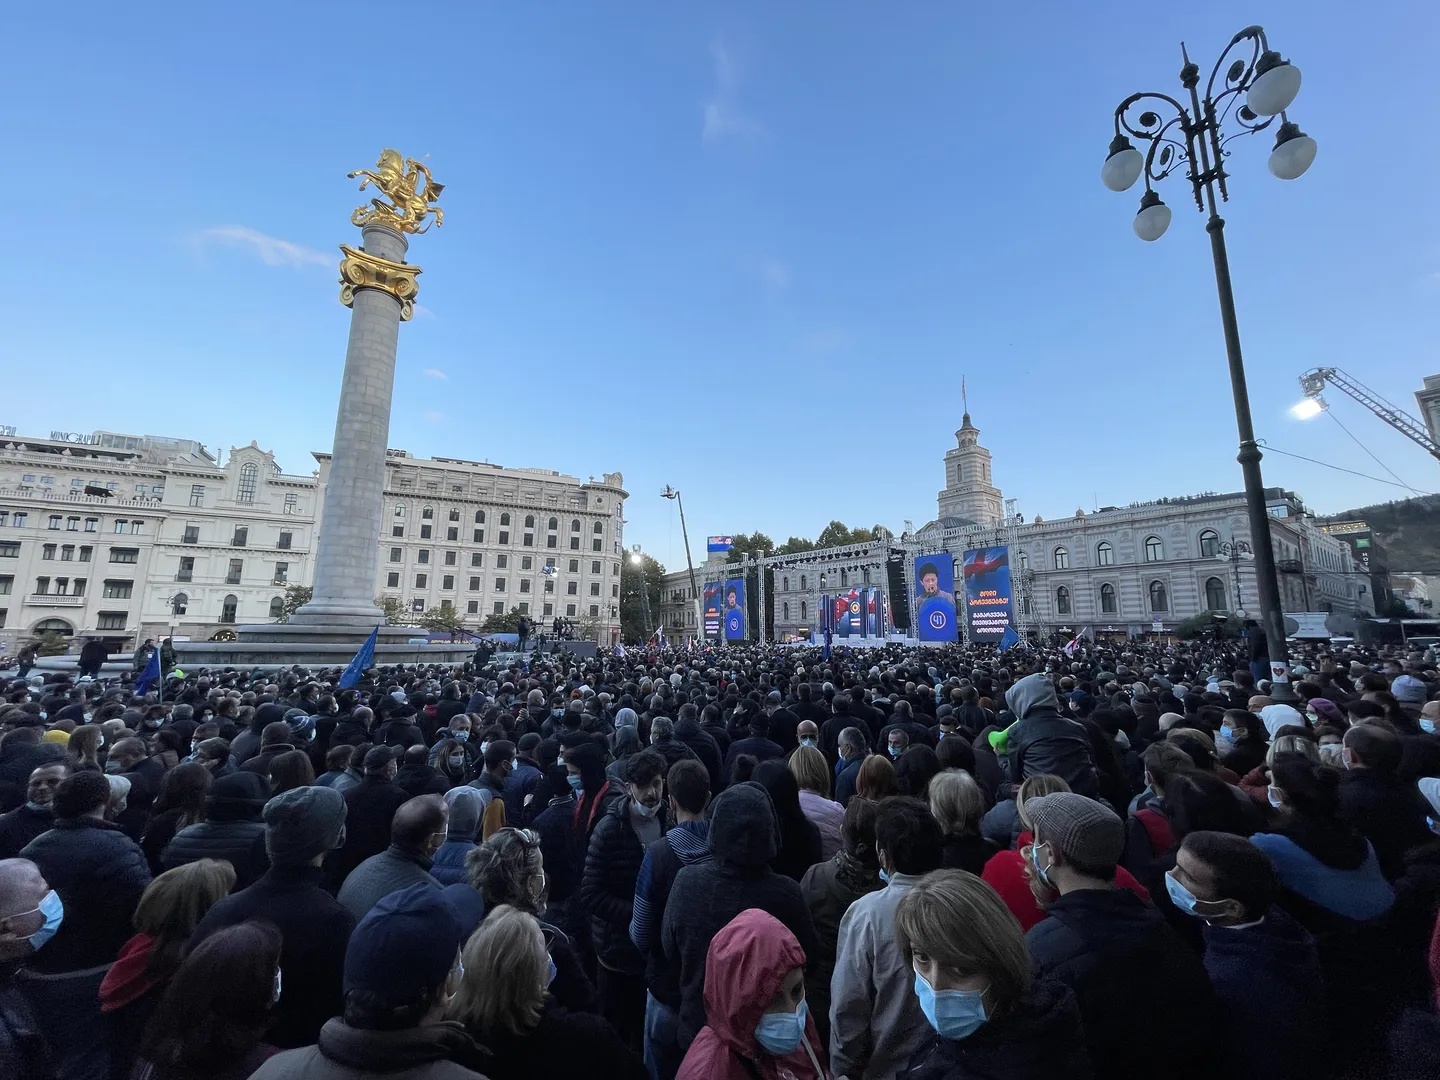 De demonstratie van de leidende partij, Georgian Dream. Deze vond plaats op het vrijheidsplein en de omliggende straten.